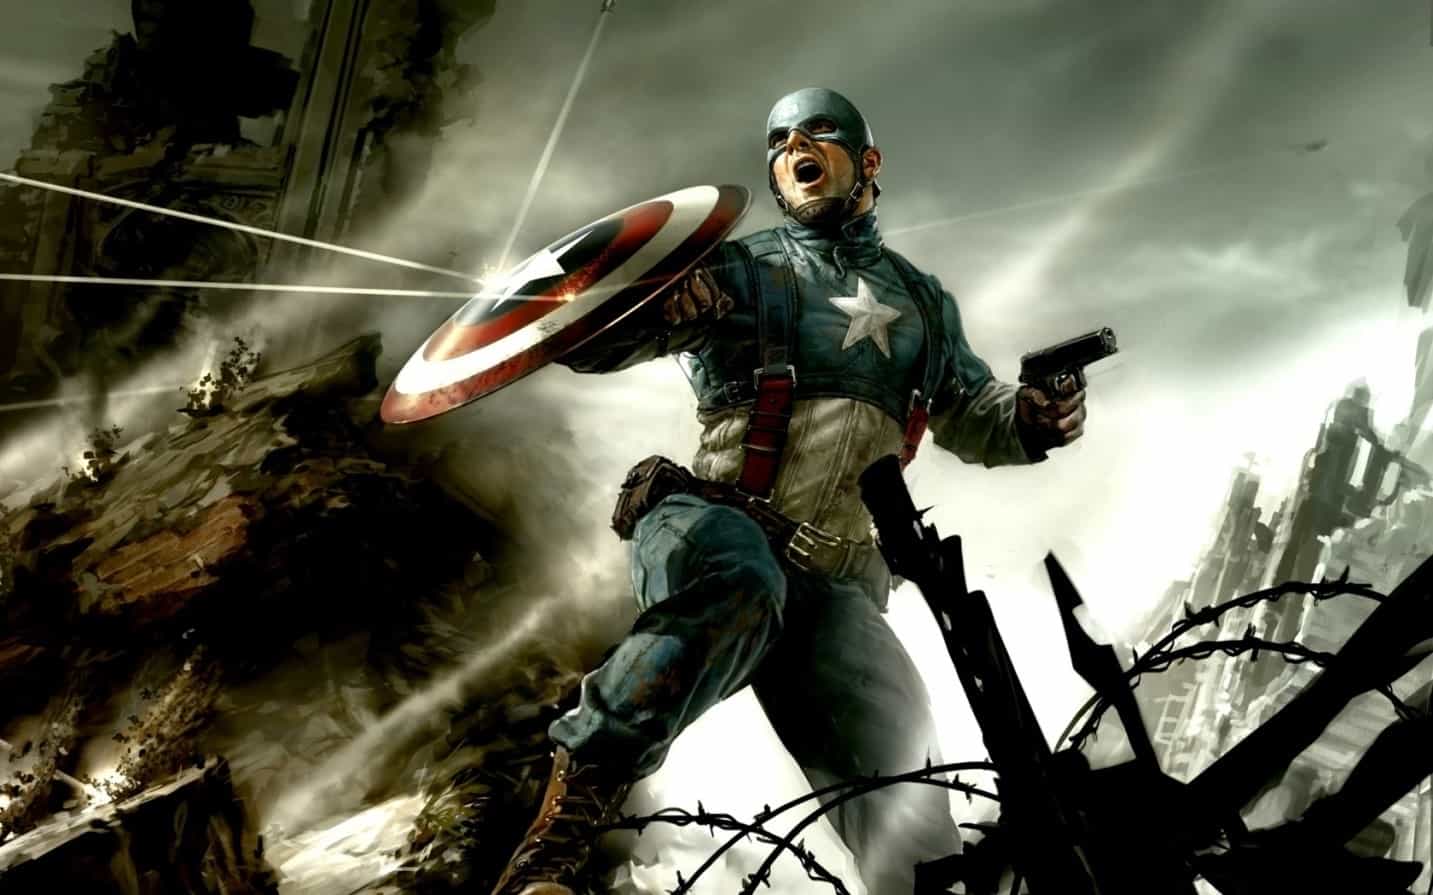 Avengers 4 Captain America